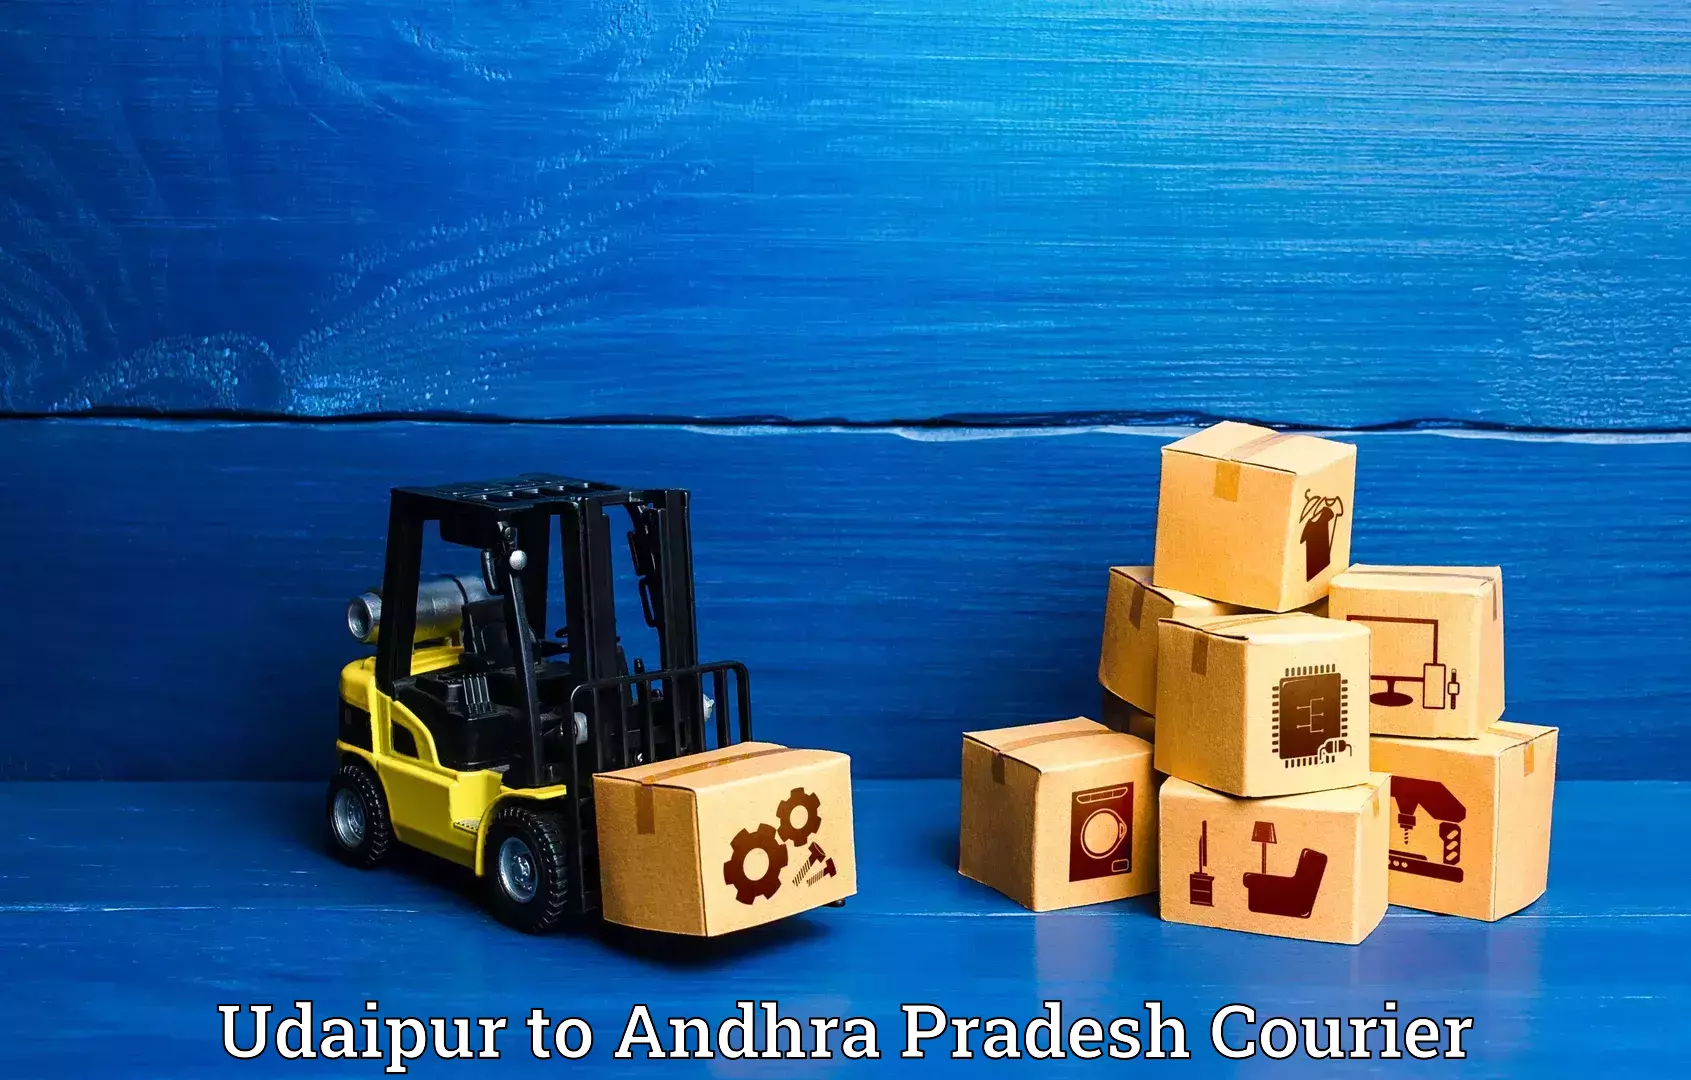 Luggage shipment specialists Udaipur to Madakasira